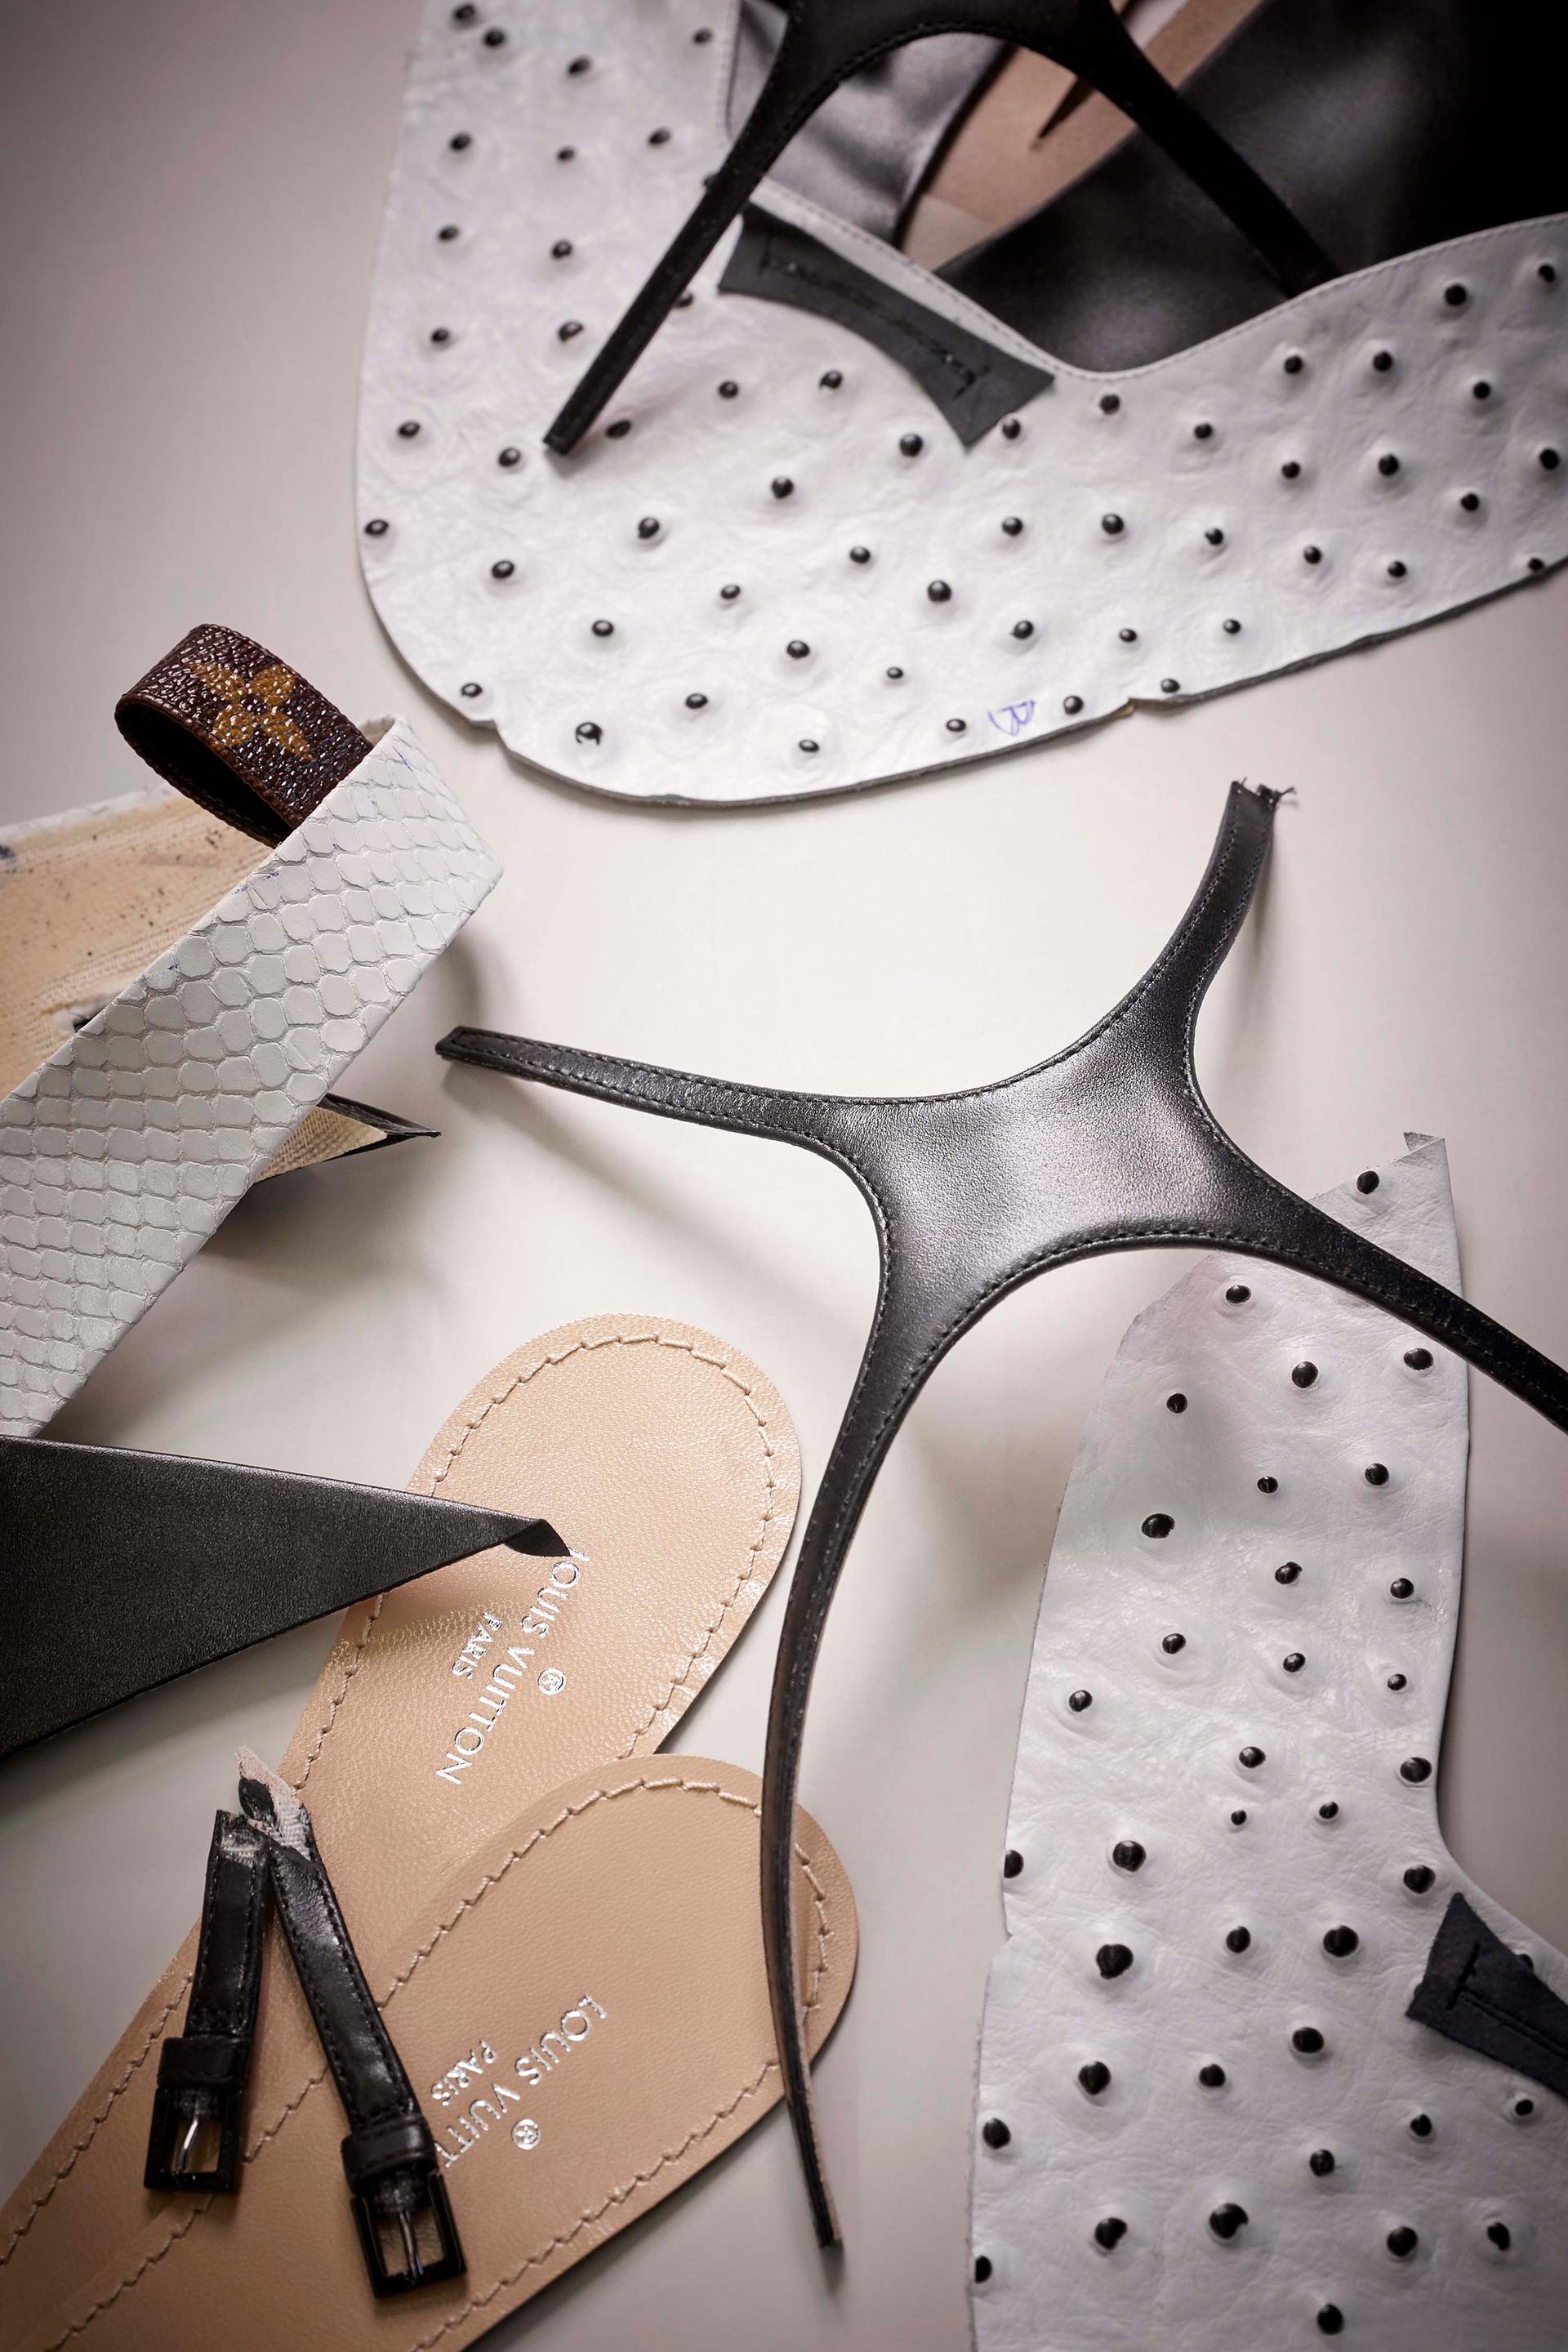 Louis Vuitton, manufacture de souliers